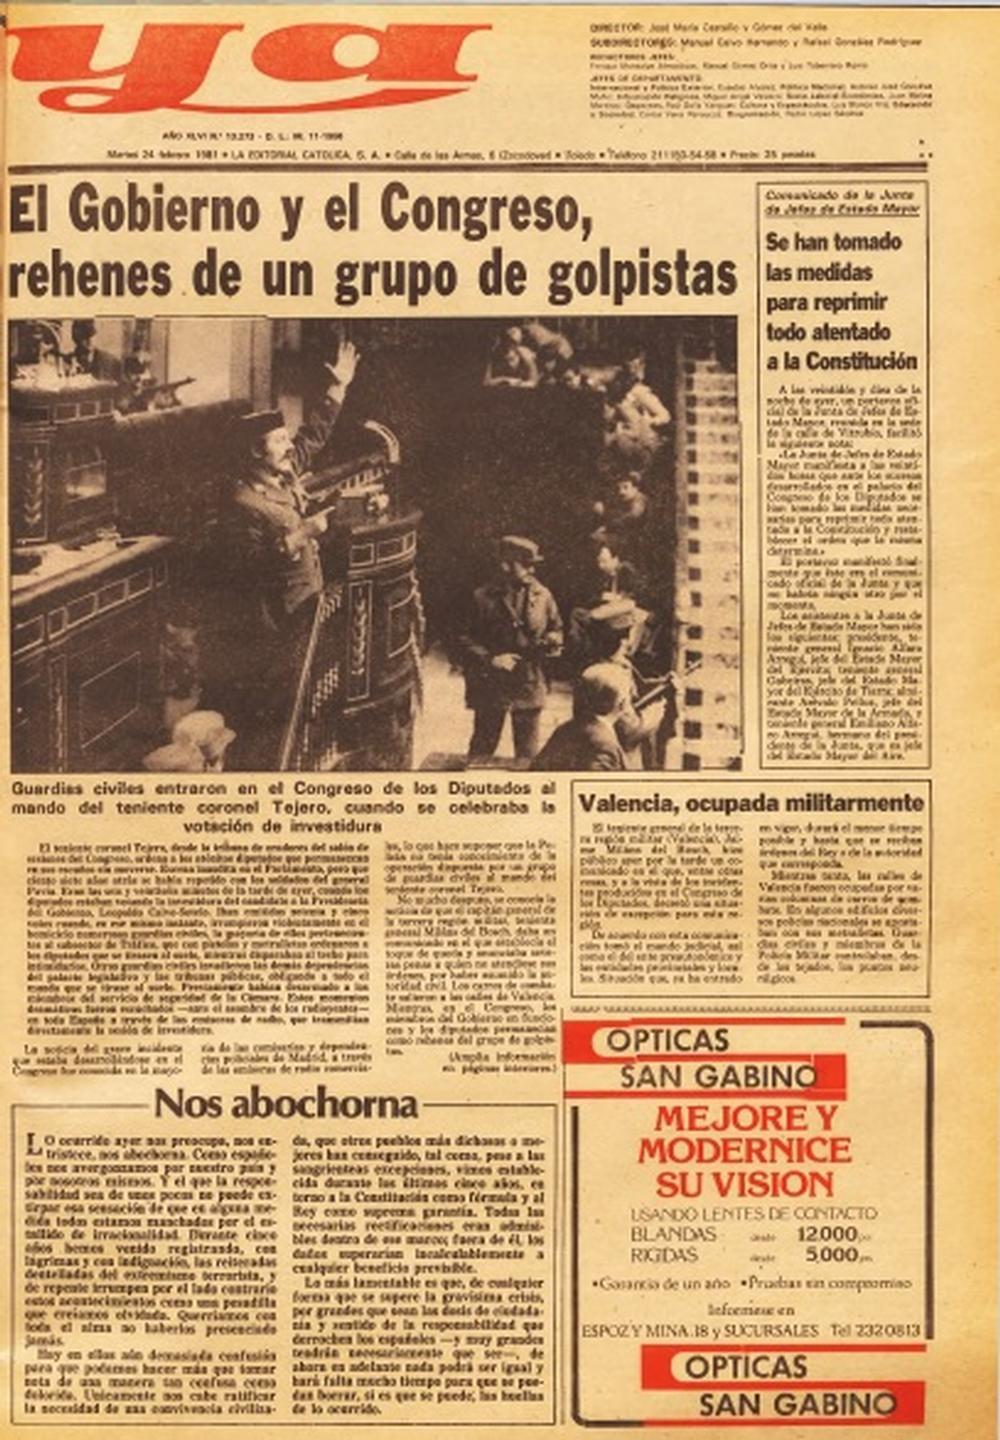 Portada de la edición toledana del Diario Ya del 24 de febrero de 1981.